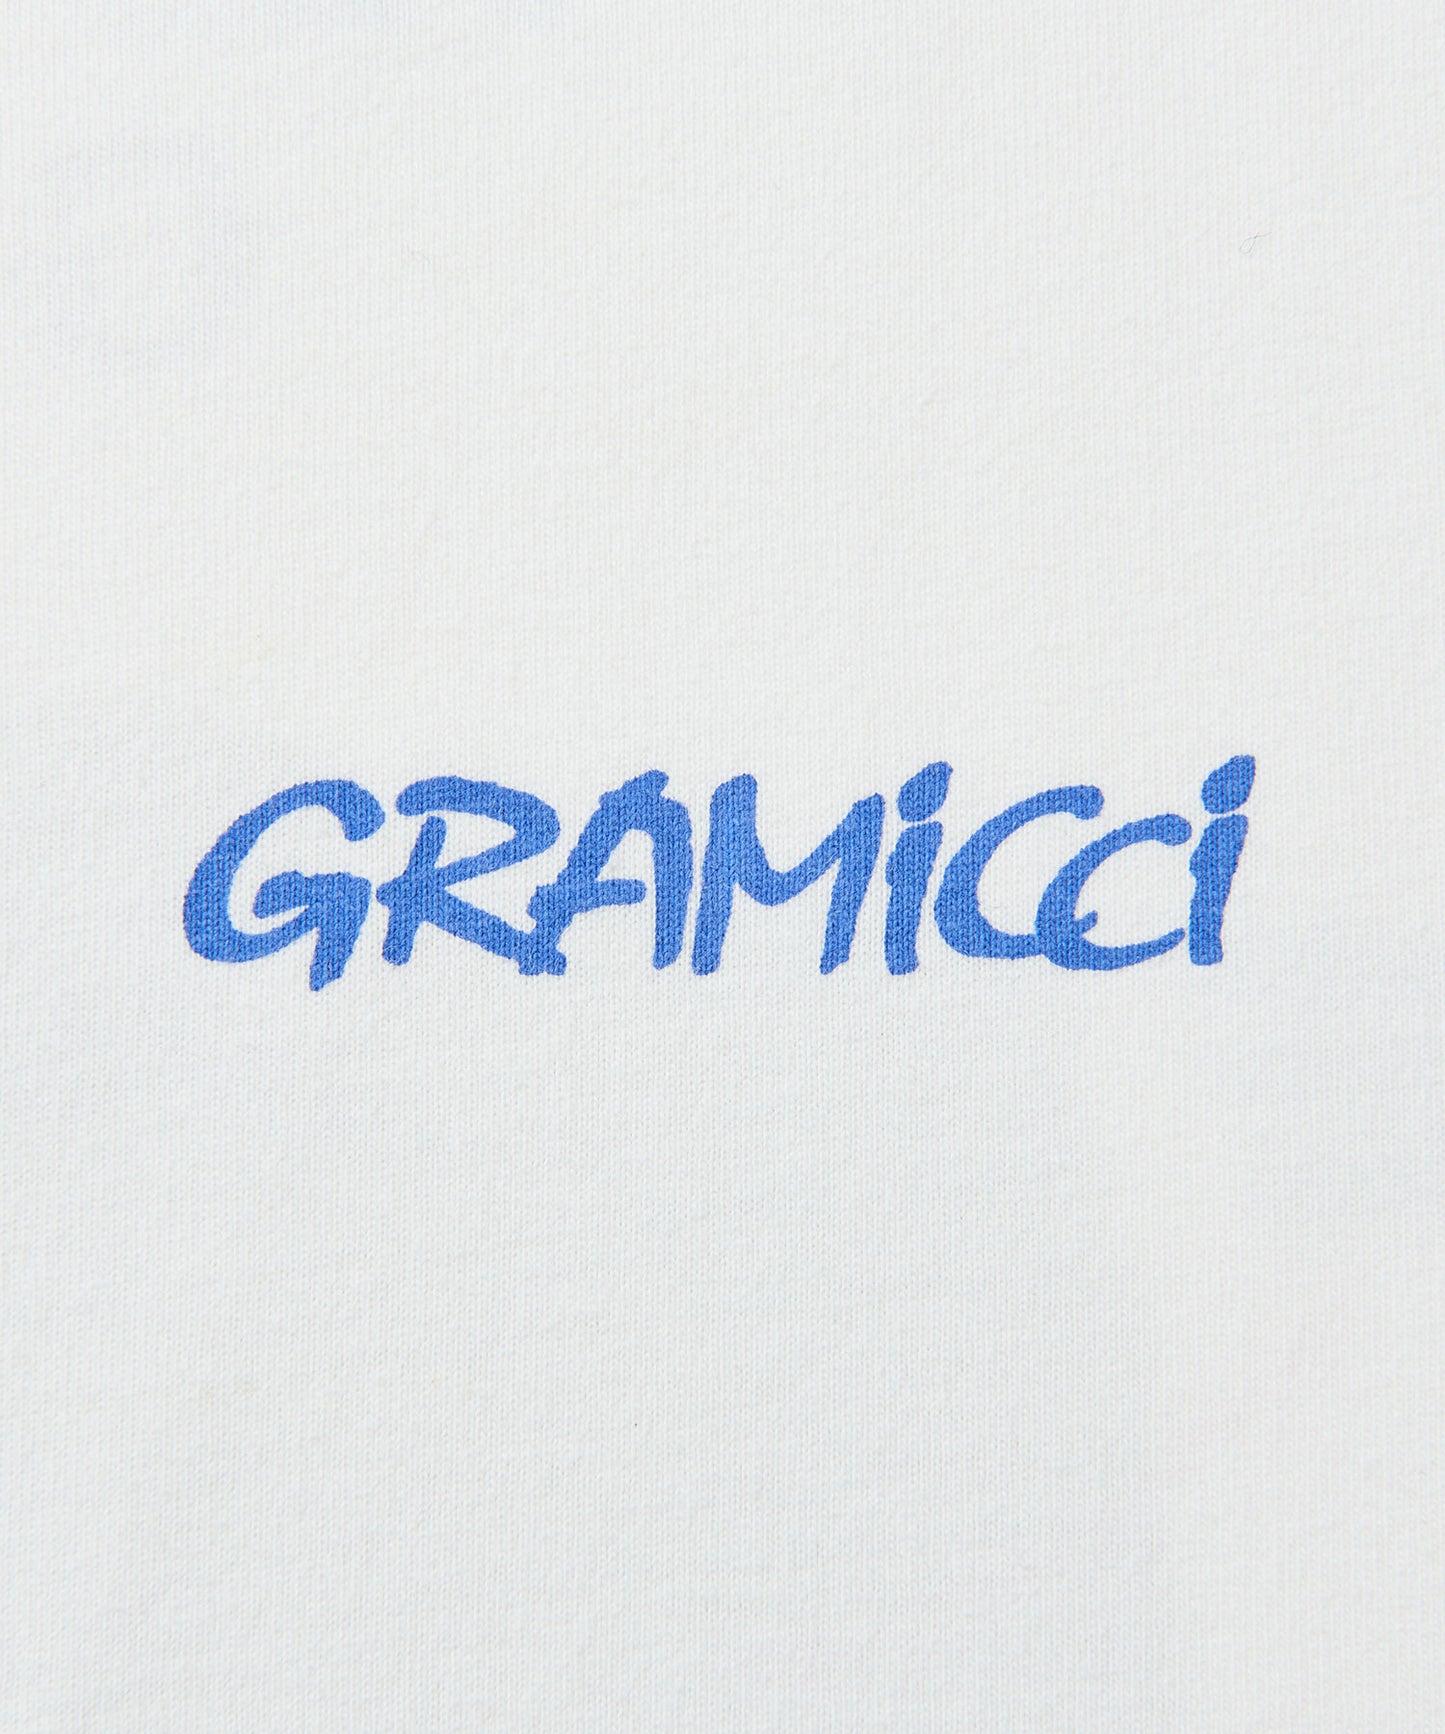 [GRAMICCI グラミチ] G-PANT TEE | G-パンツTシャツ